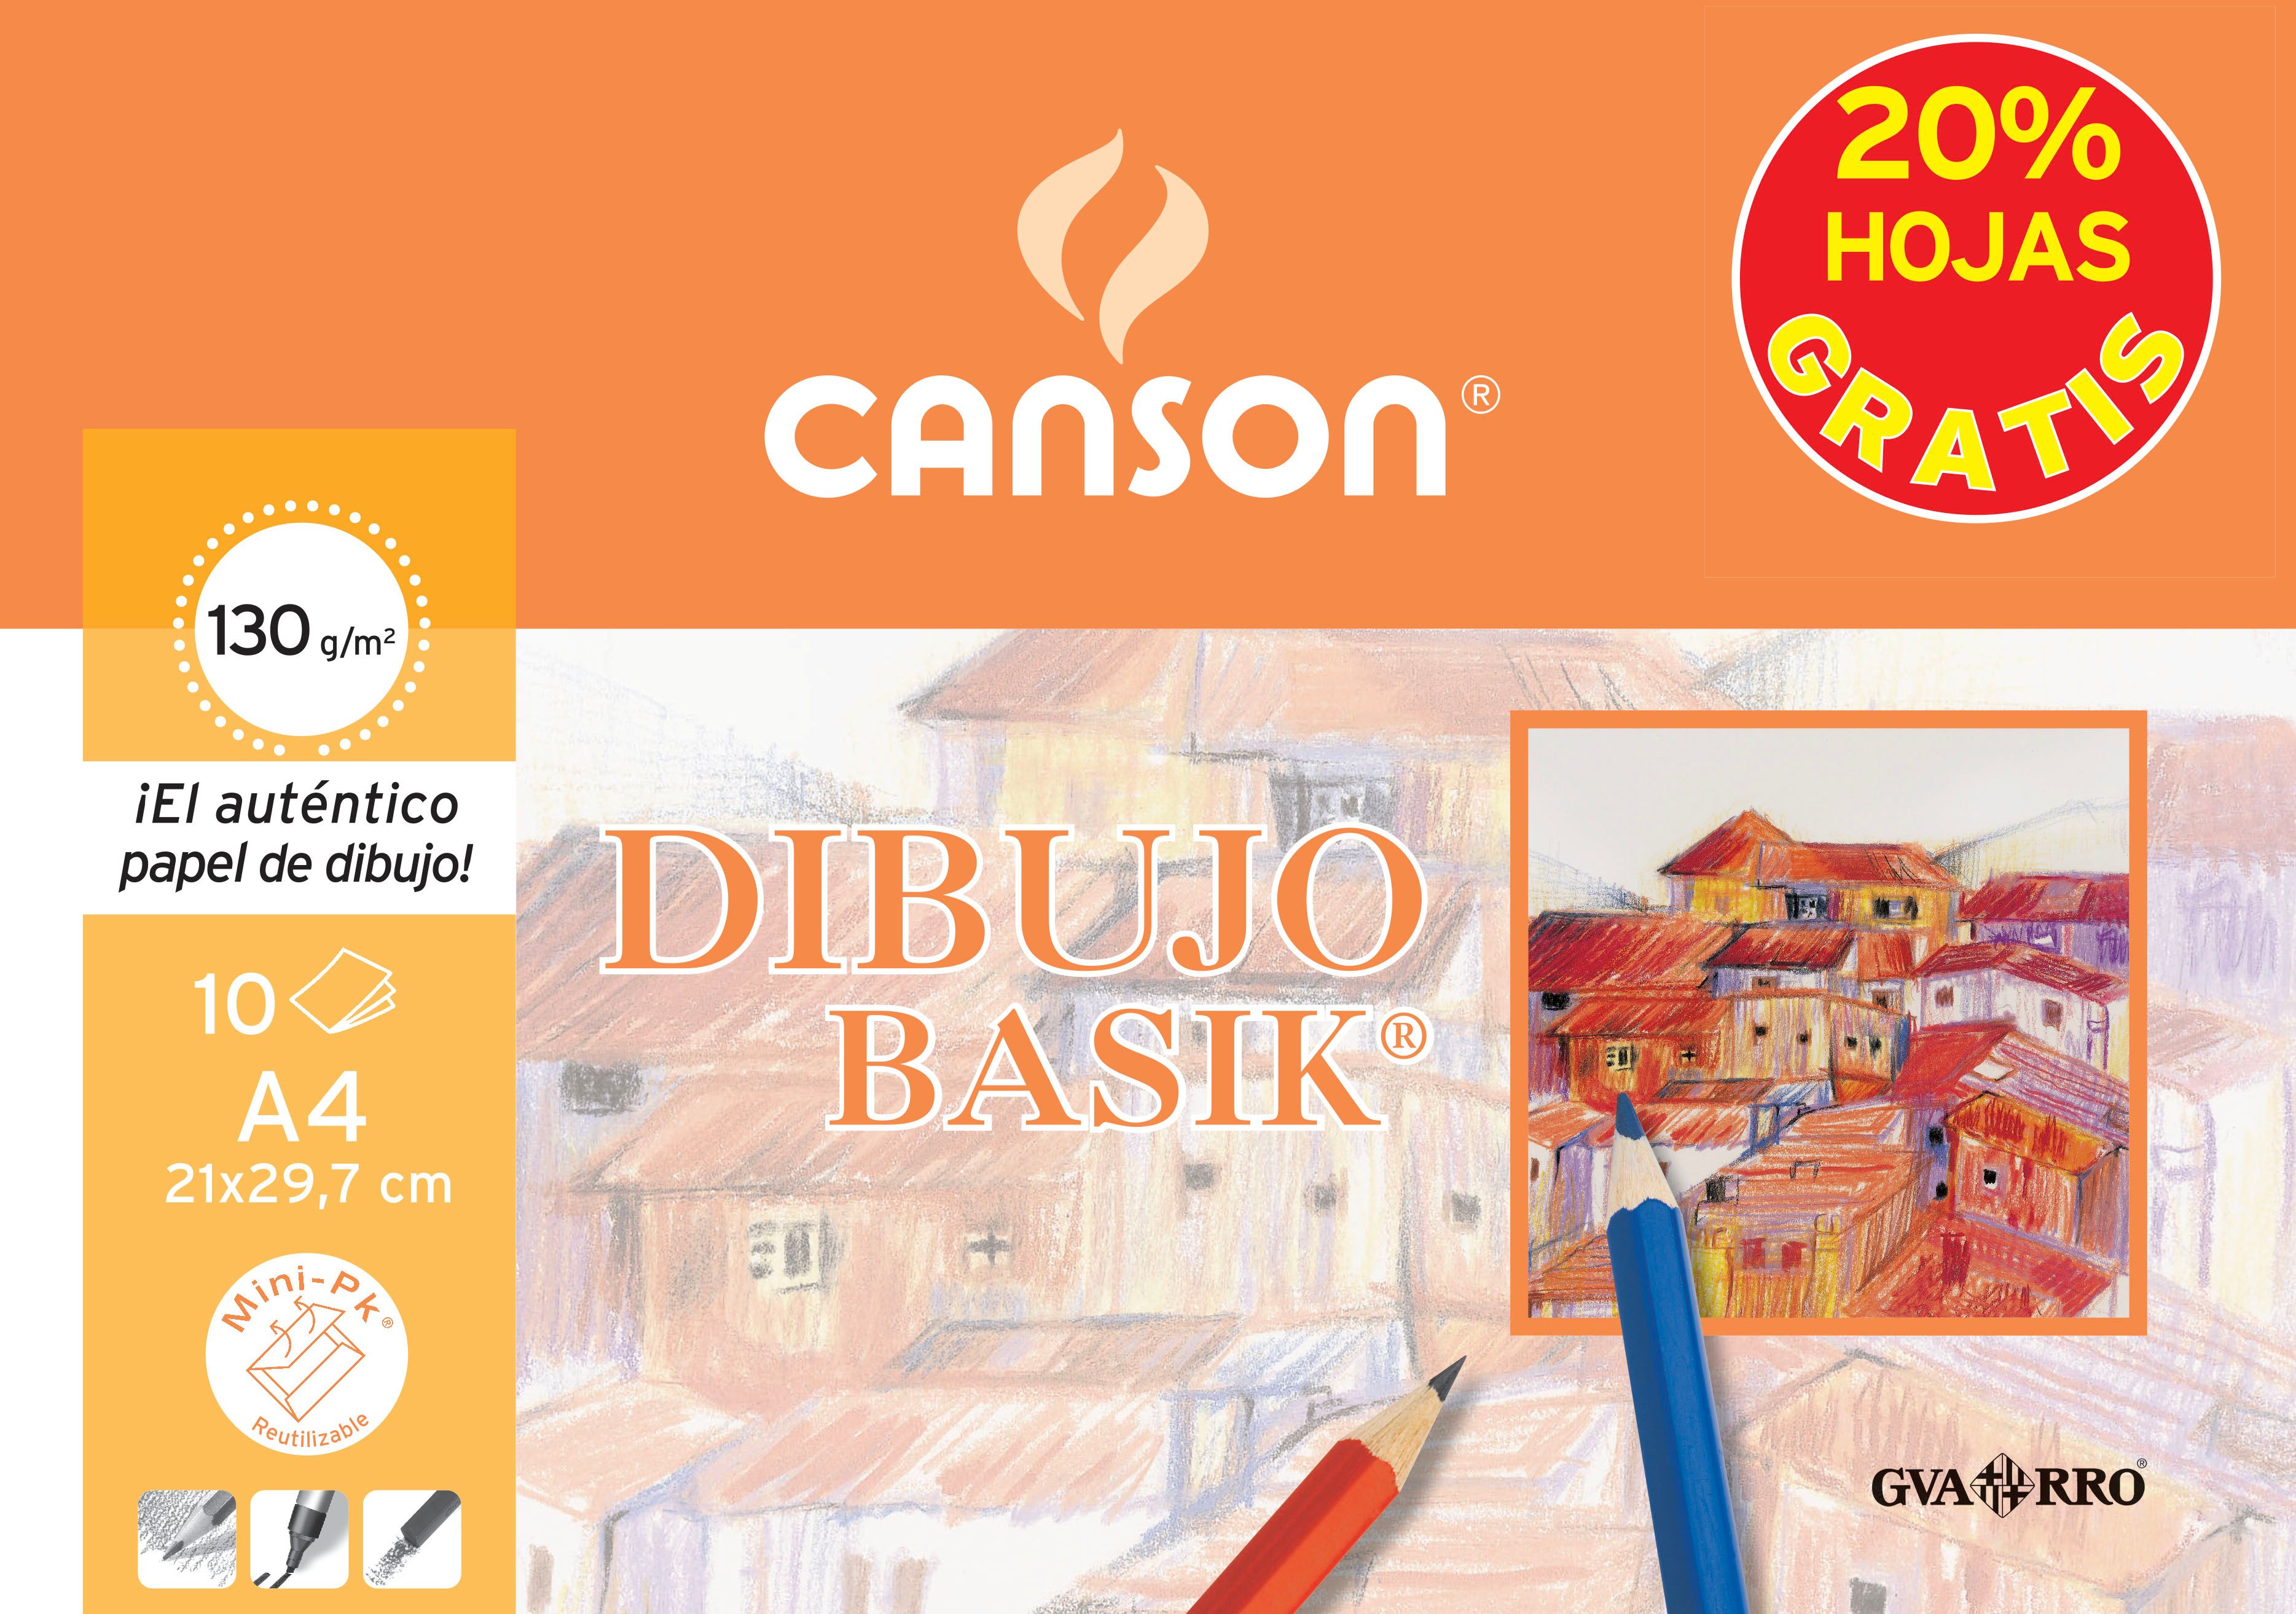 Canson Minipack Promo 10 Feuilles Dessin Basik Lisses - 21x29,7 - 130g - 20% de Feuilles Offertes - Coloris Blanc